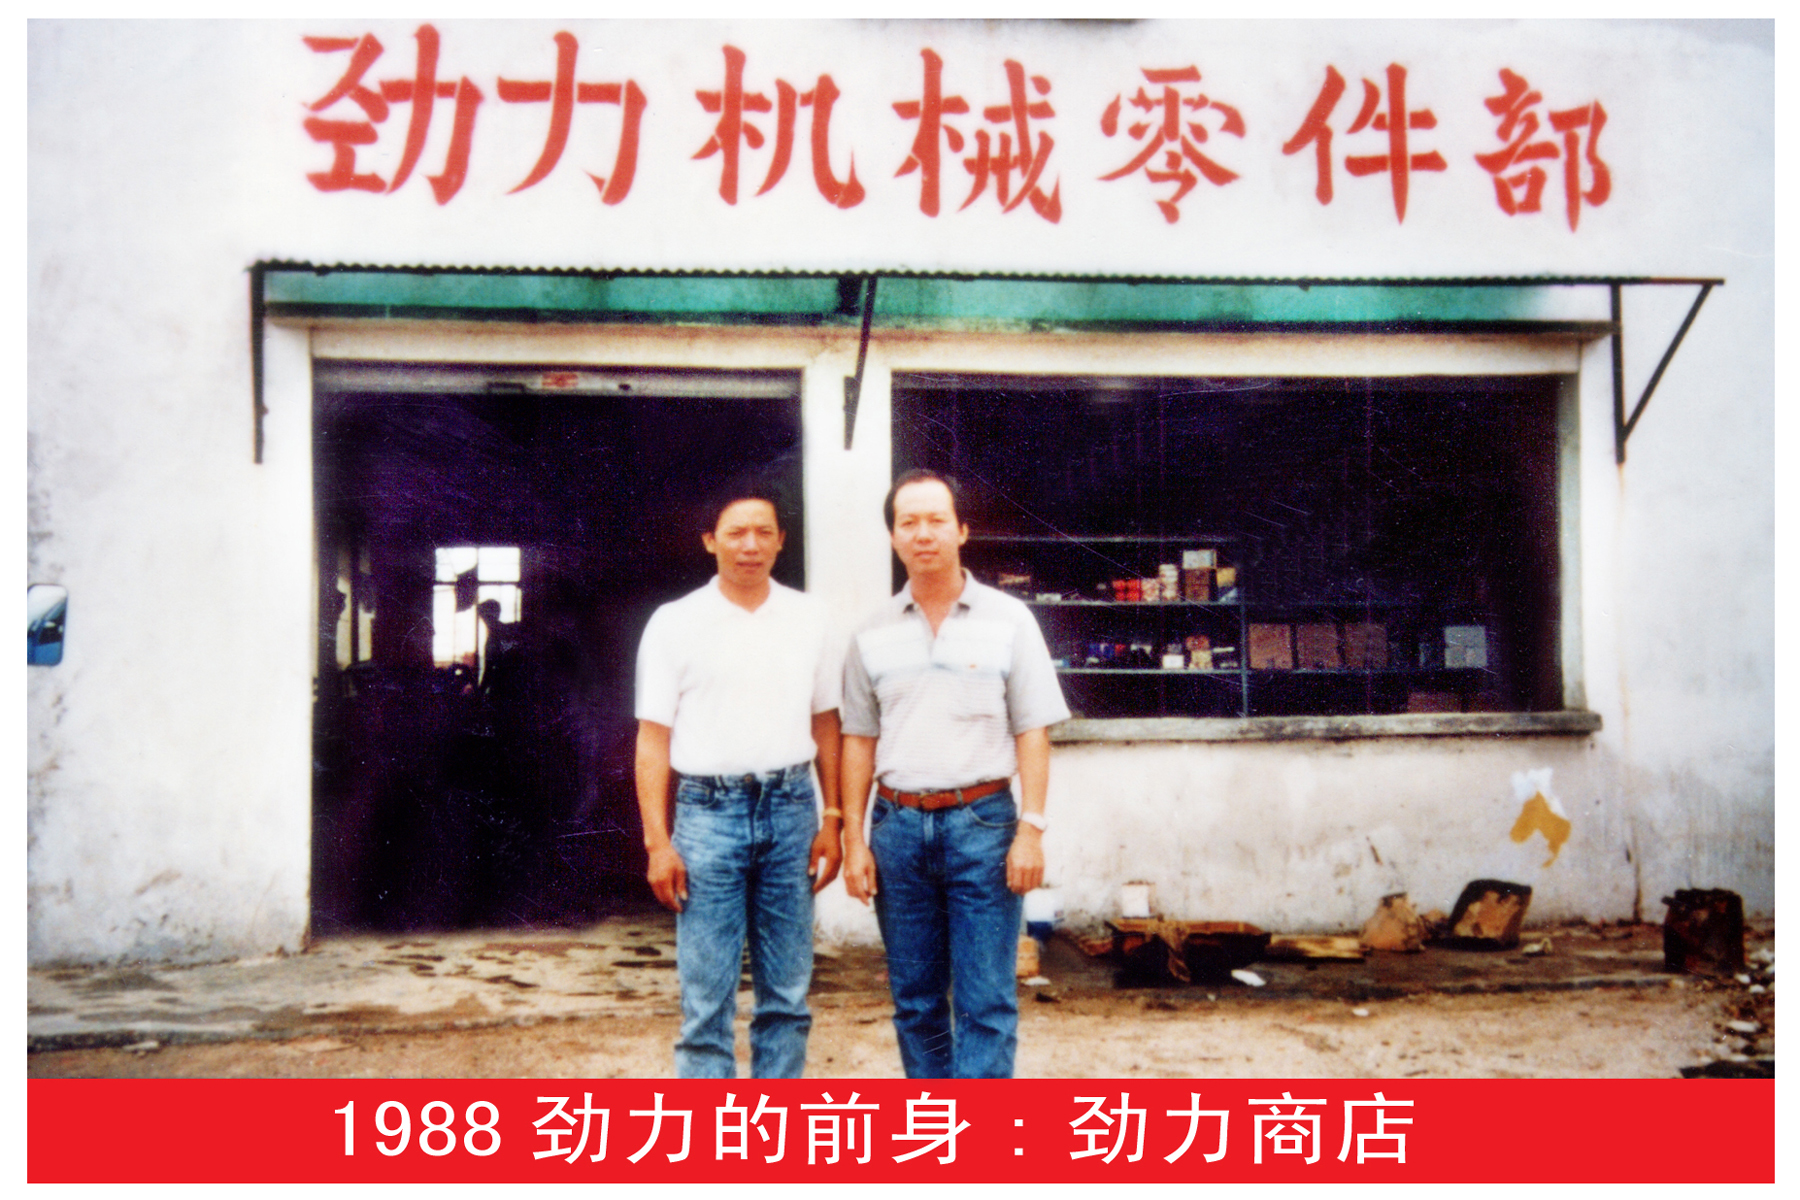 二1、1988年8月22日，一间真正属于郑卓辉自己的“劲力工程机械配件商店”正式对外营业了。这是郑卓辉企业经营的起步。图为郑卓辉与聘请的新加坡师傅在自己那间不大的商店门口合影。